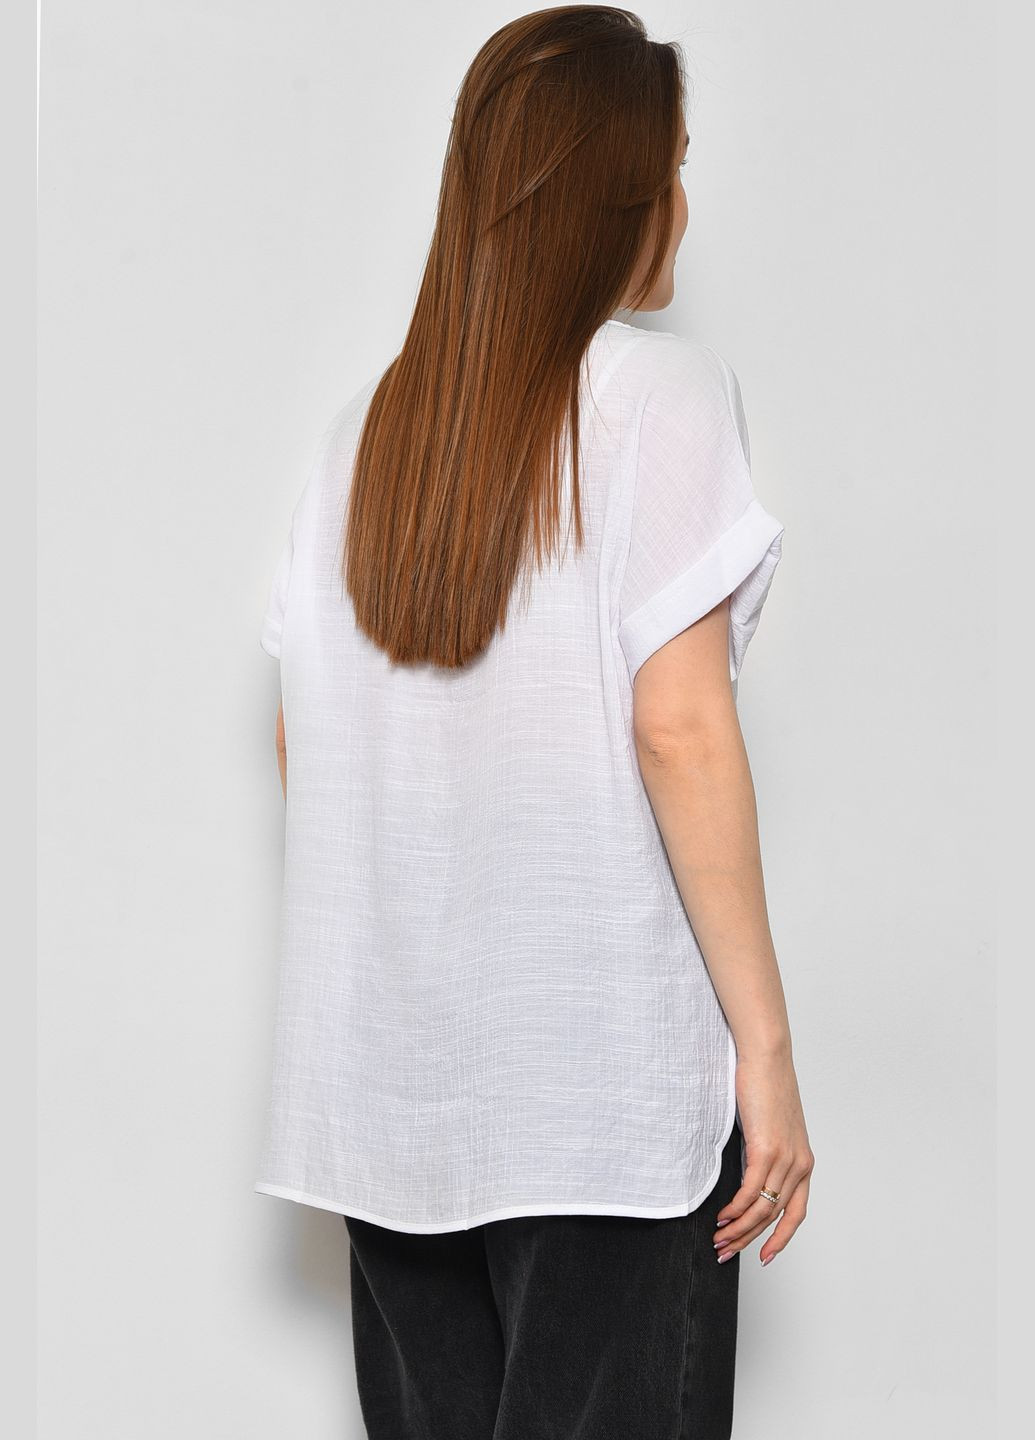 Белая летняя футболка женская полубатальная белого цвета Let's Shop